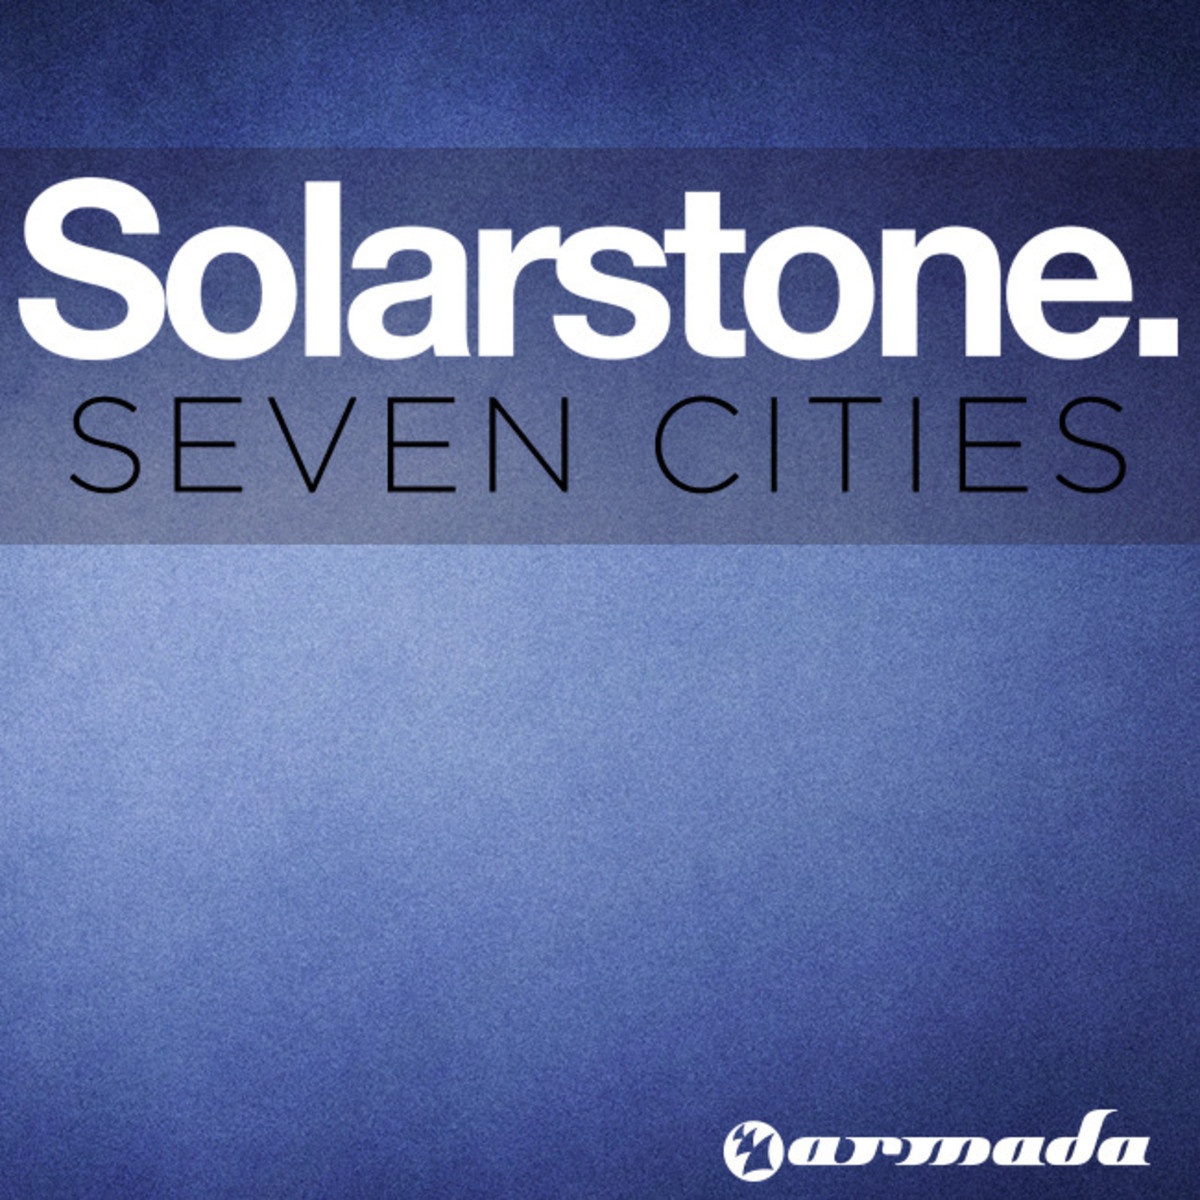 Seven Cities (2002 Remixes)